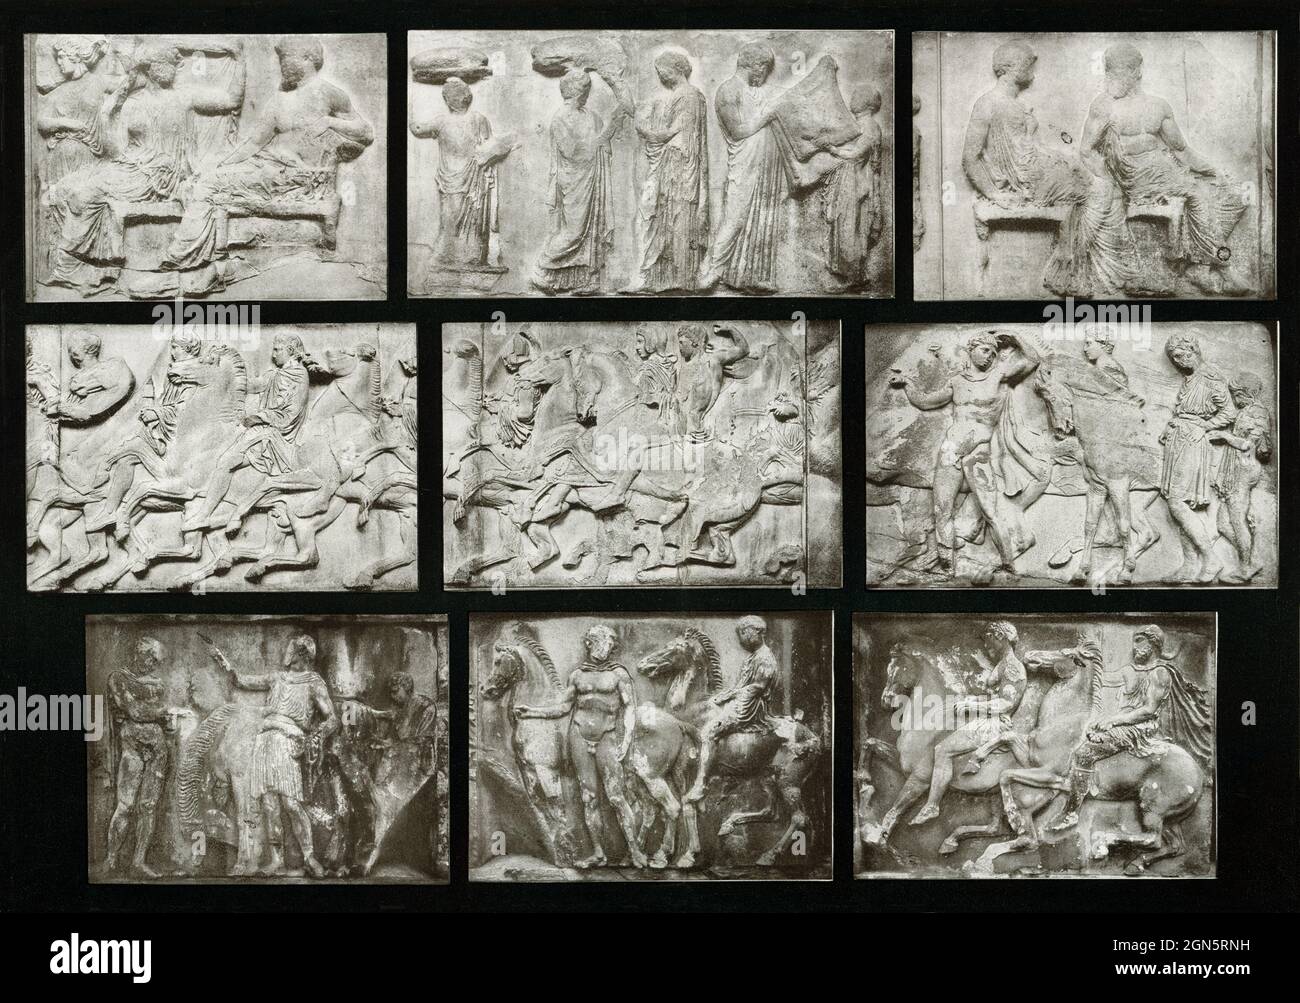 Dieses Foto aus dem Jahr 1910 zeigt Reliefs vom Partheno-Fries auf der Akropolis in Athen. Es sind Szenen aus dem Festzug, die die Tage des Panathenaic Festivals darstellen und illustrieren. Der Parthenon, der sich auf der Akropolis von Athen befindet, war der Höhepunkt der griechischen Architektur und war üppiger dekoriert als jeder andere griechische Tempel davor. Phidias war der Aufseher der skulpturalen Dekoration des Tempels, und jedes der zweiundneunzig dorischen Metopes hatte Relief-Skulpturszenen, sowie jeden Zentimeter des 424 Meter langen ionischen Frieses. Die Giebel waren mit Dutzenden von überlebensgroßen si gefüllt Stockfoto